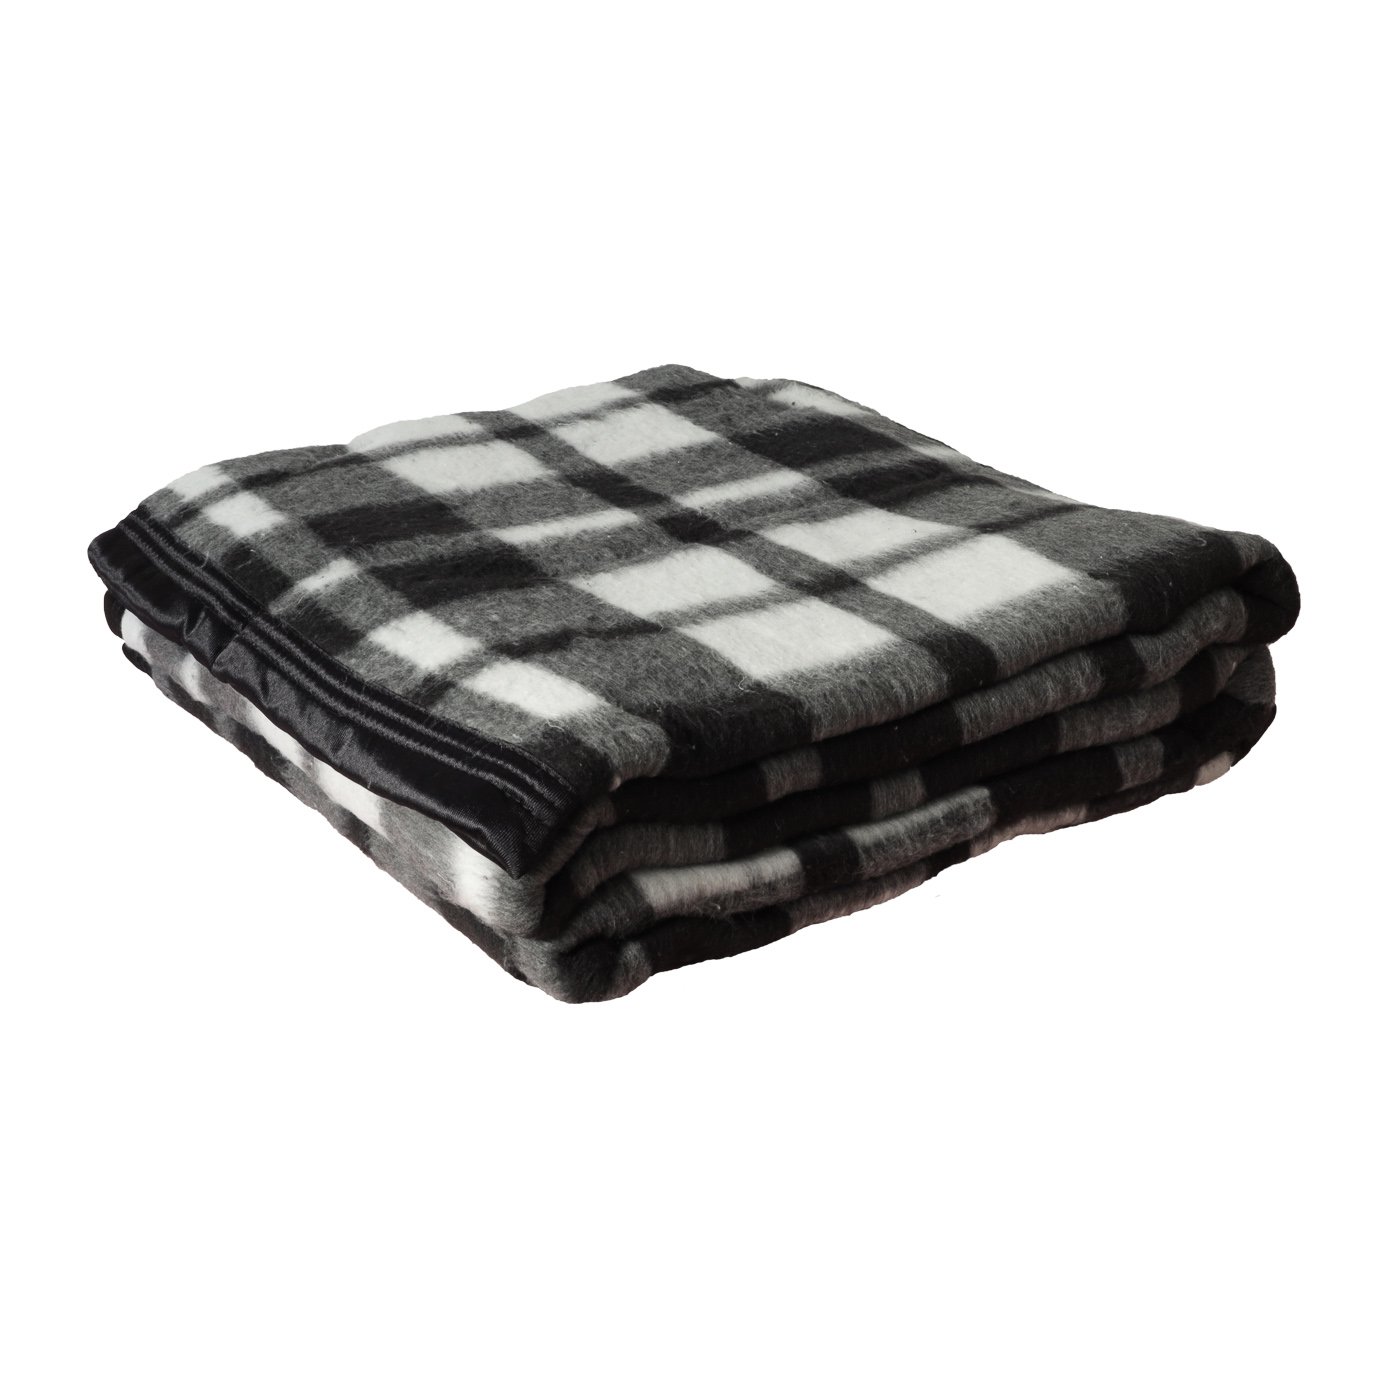 Cobertor Casal Boa Noite Xadrez 1,80 x 2,20 Mt Guaratingueta cor: preto - 1